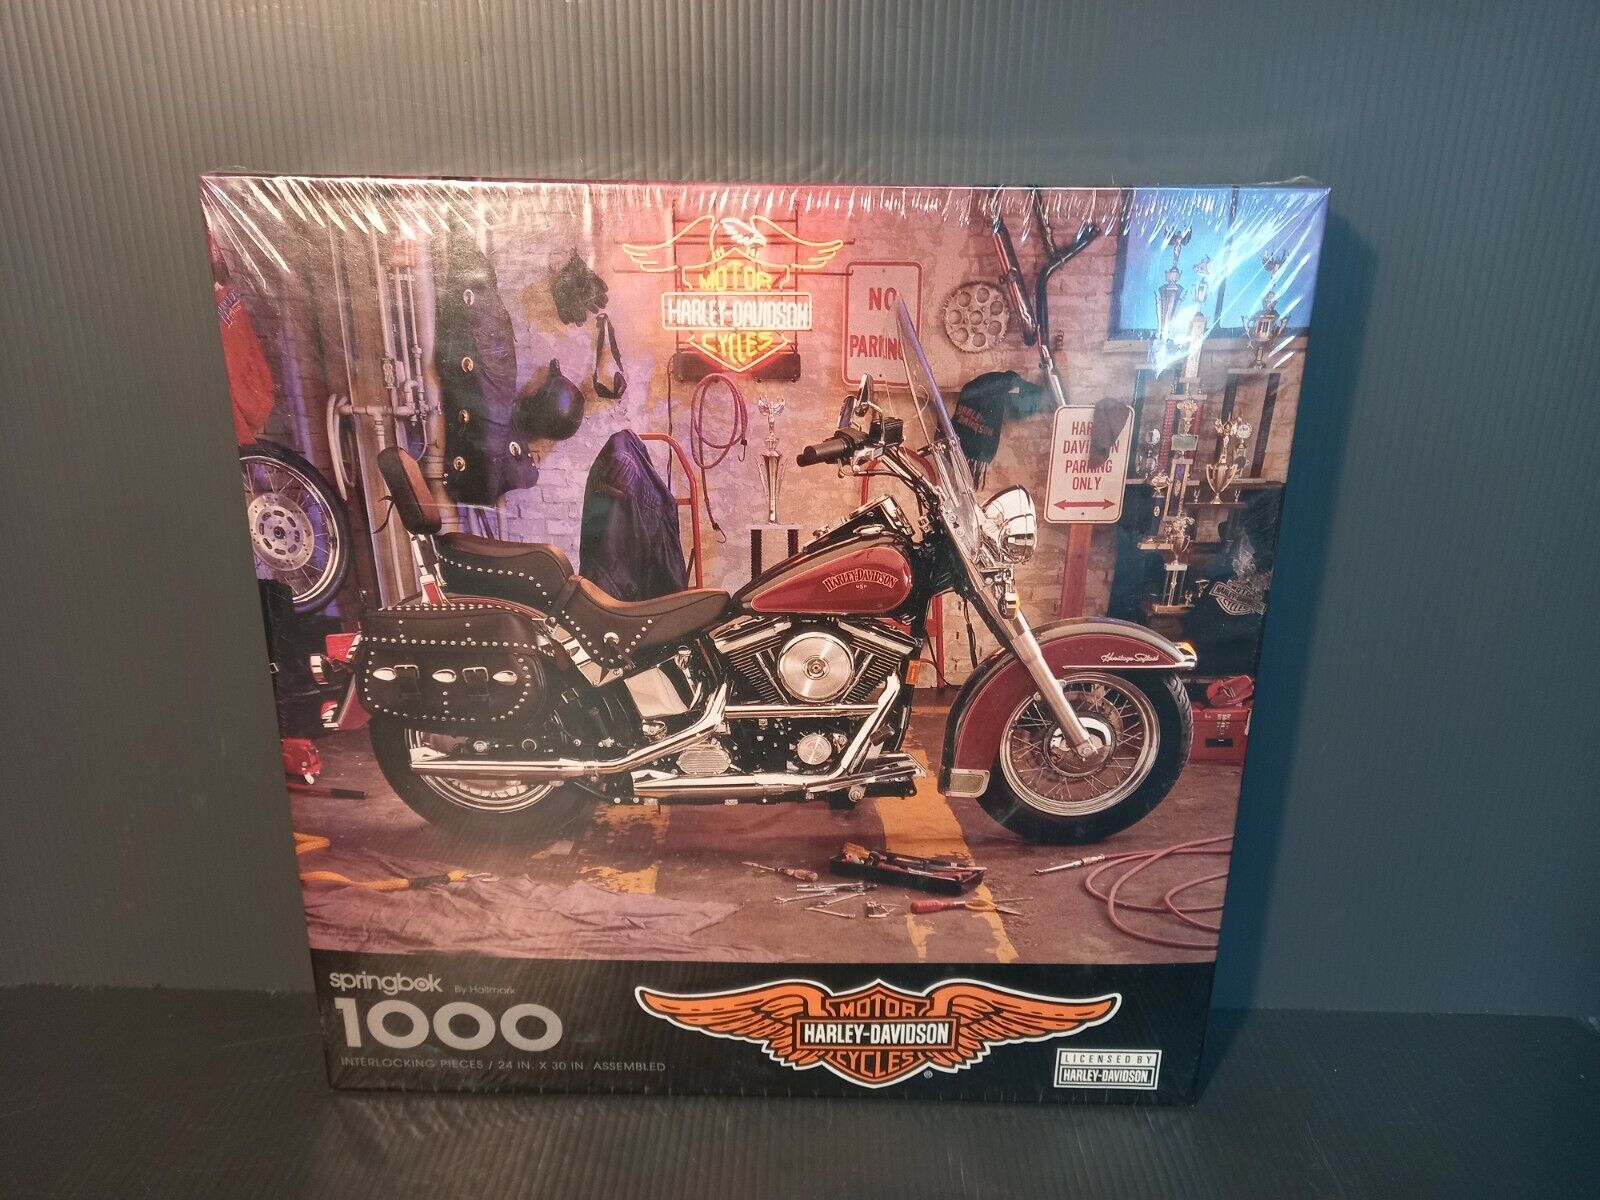 New Vintage Harley Davidson 1994 Springbok 1000 Piece Puzzle Motorcycle